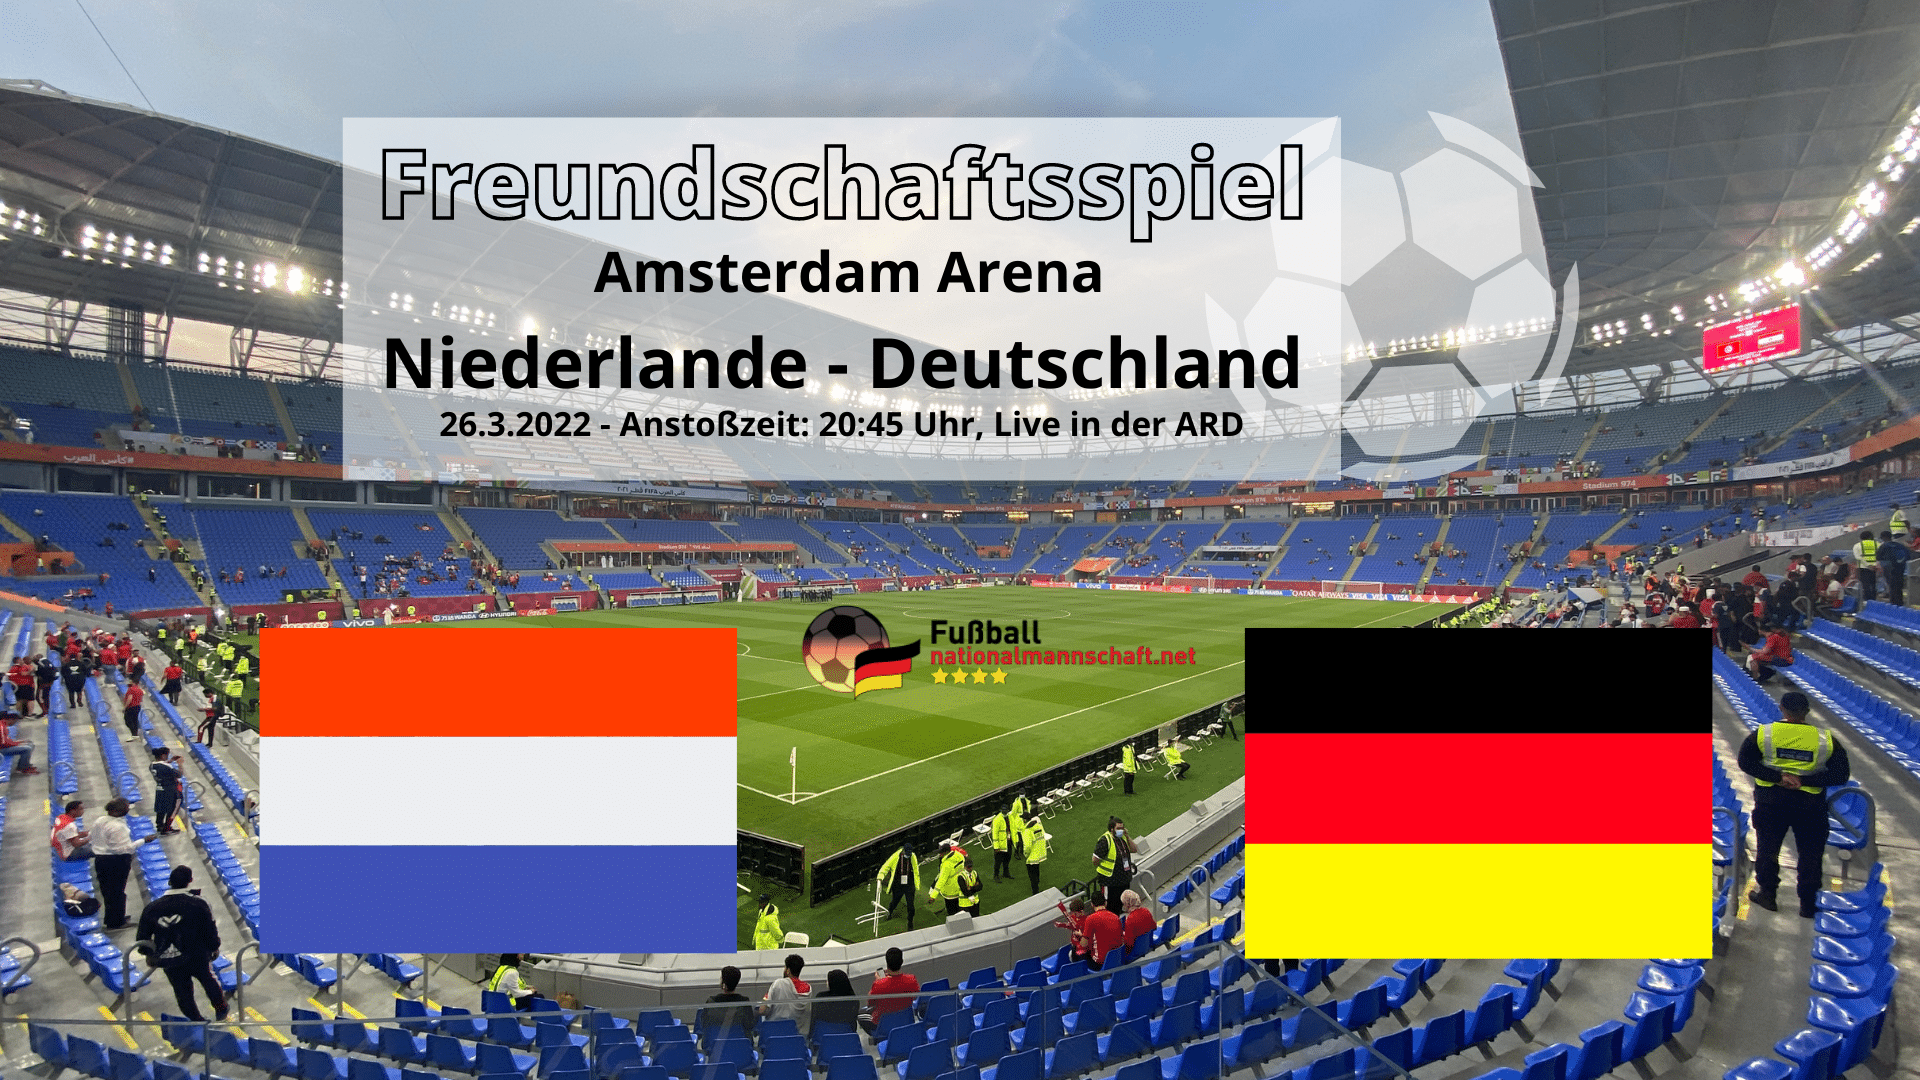 Voorbeschouwing van de interland tussen Duitsland en Nederland op 29.3.  De volgende interland van Duitsland